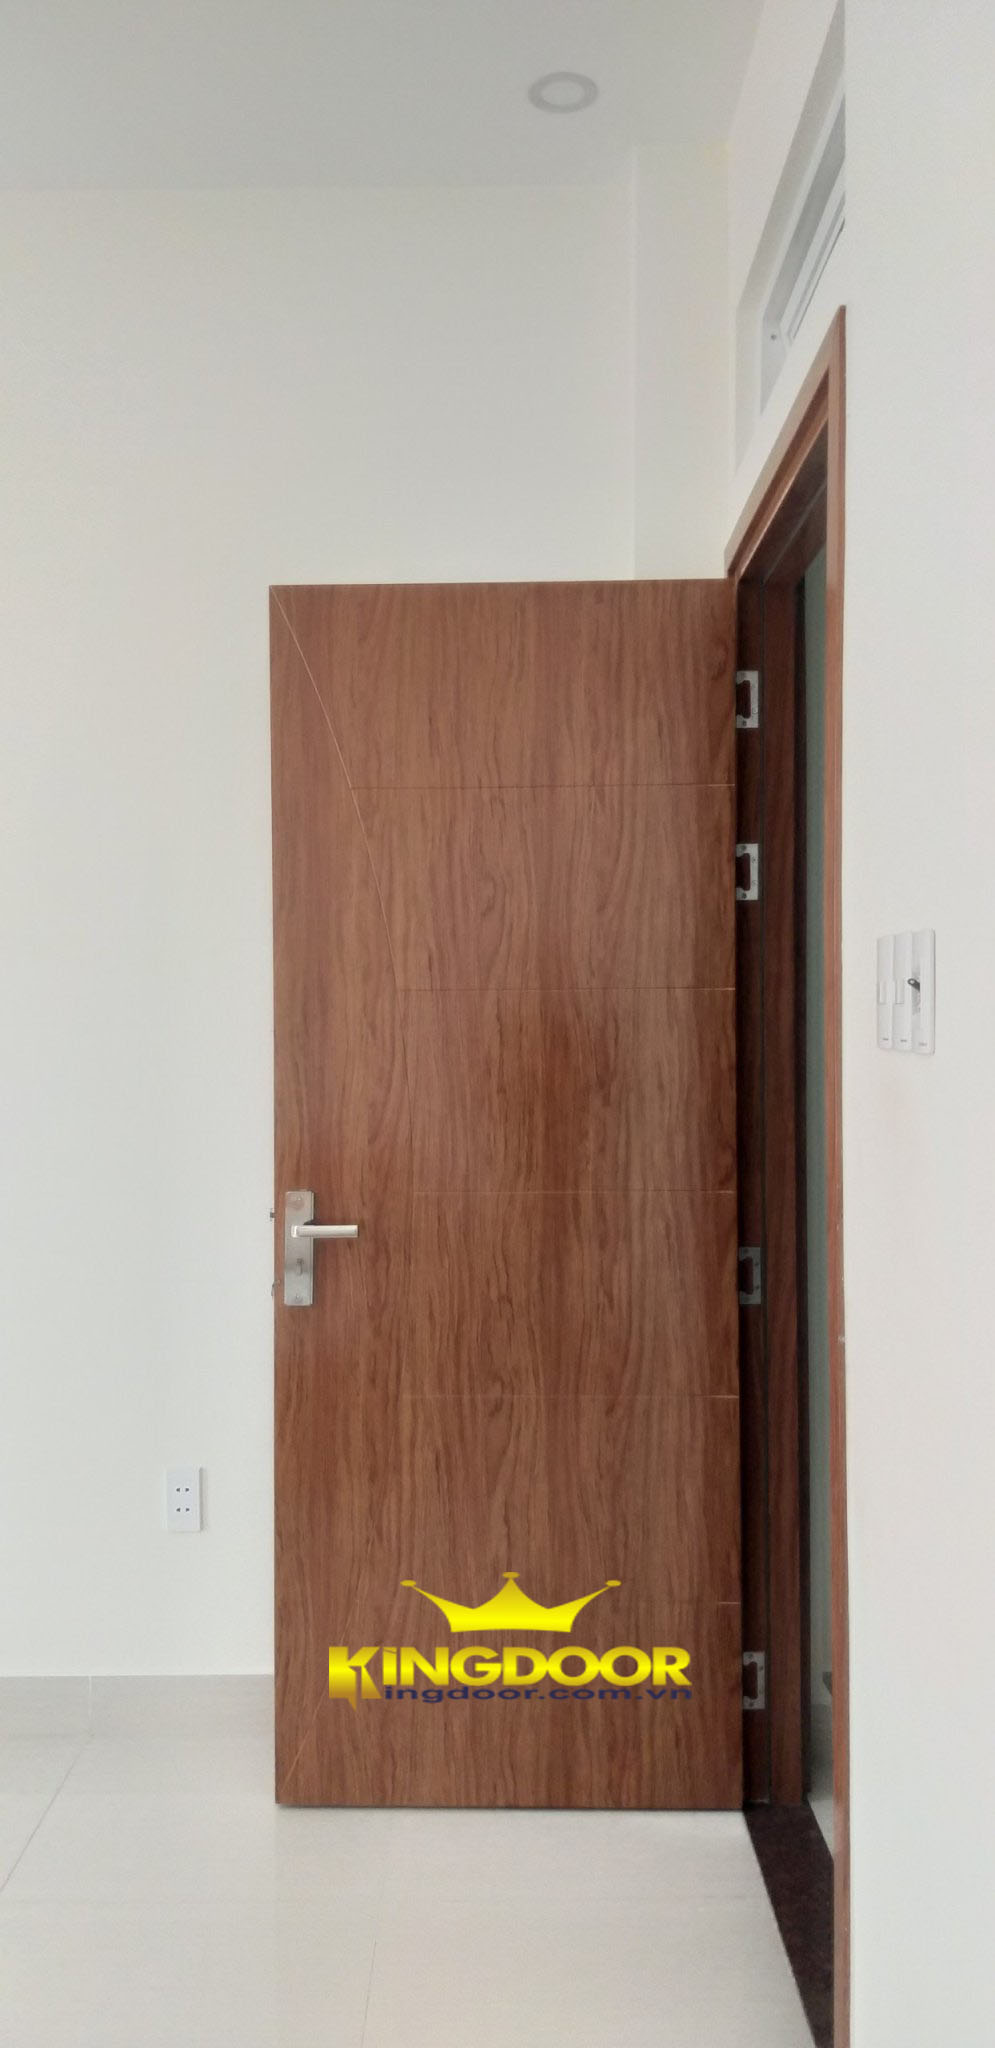 cửa nhựa composite sơn vân gỗ